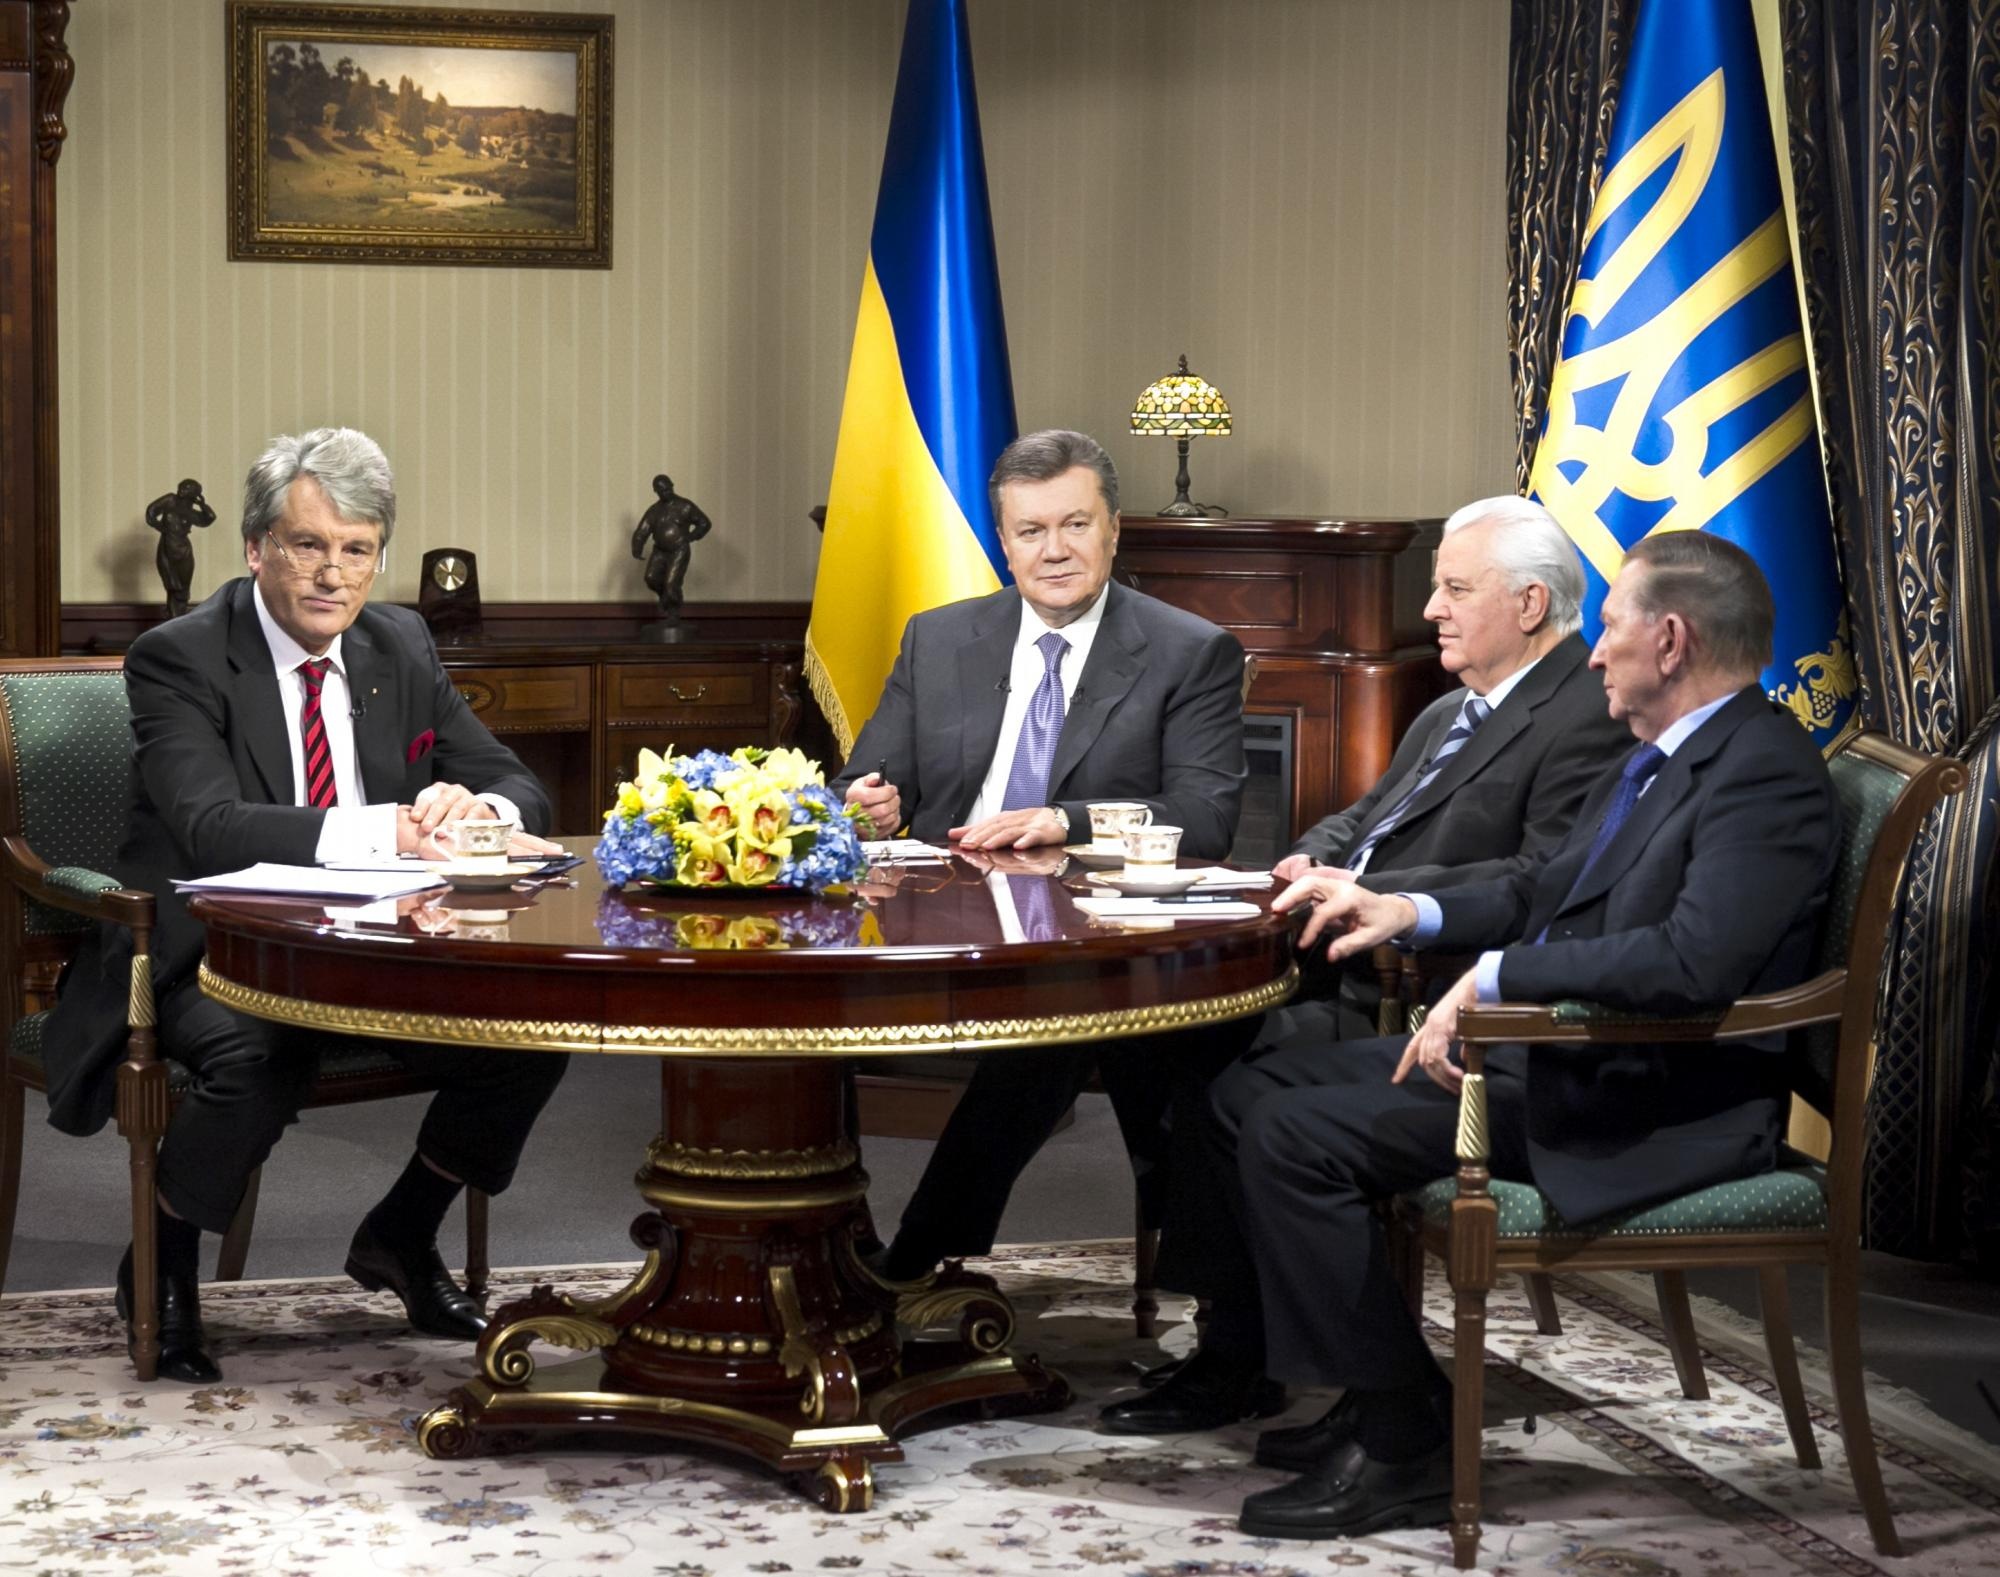 Чотири президенти України Віктор Ющенко, Віктор Янукович, Леонід Кравчук і Леонід Кучма екстрено зустрілися під час Євромайдану, 10 грудня 2013 року